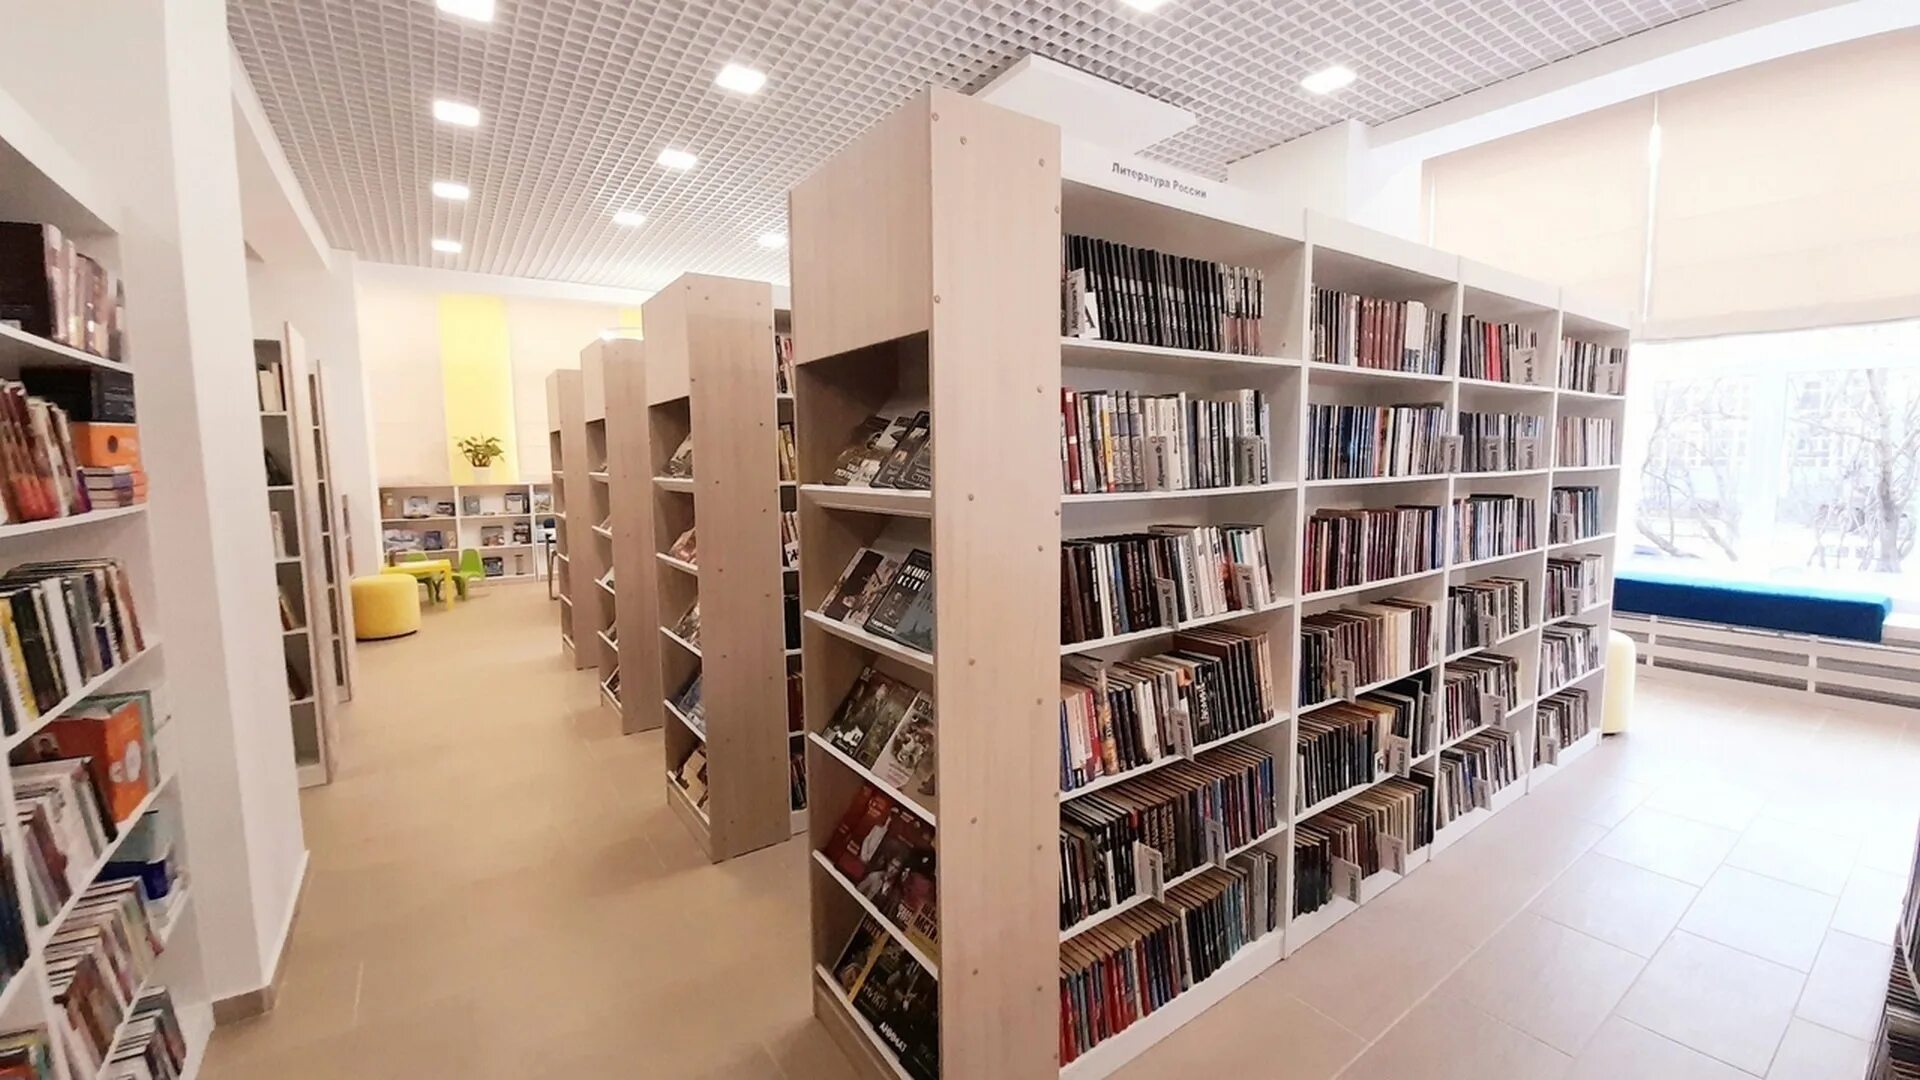 Библиотека 4 0. Библиотека Воркута. Центральная библиотека Воркута. Библиотека нового поколения. Модельная библиотека нового поколения.